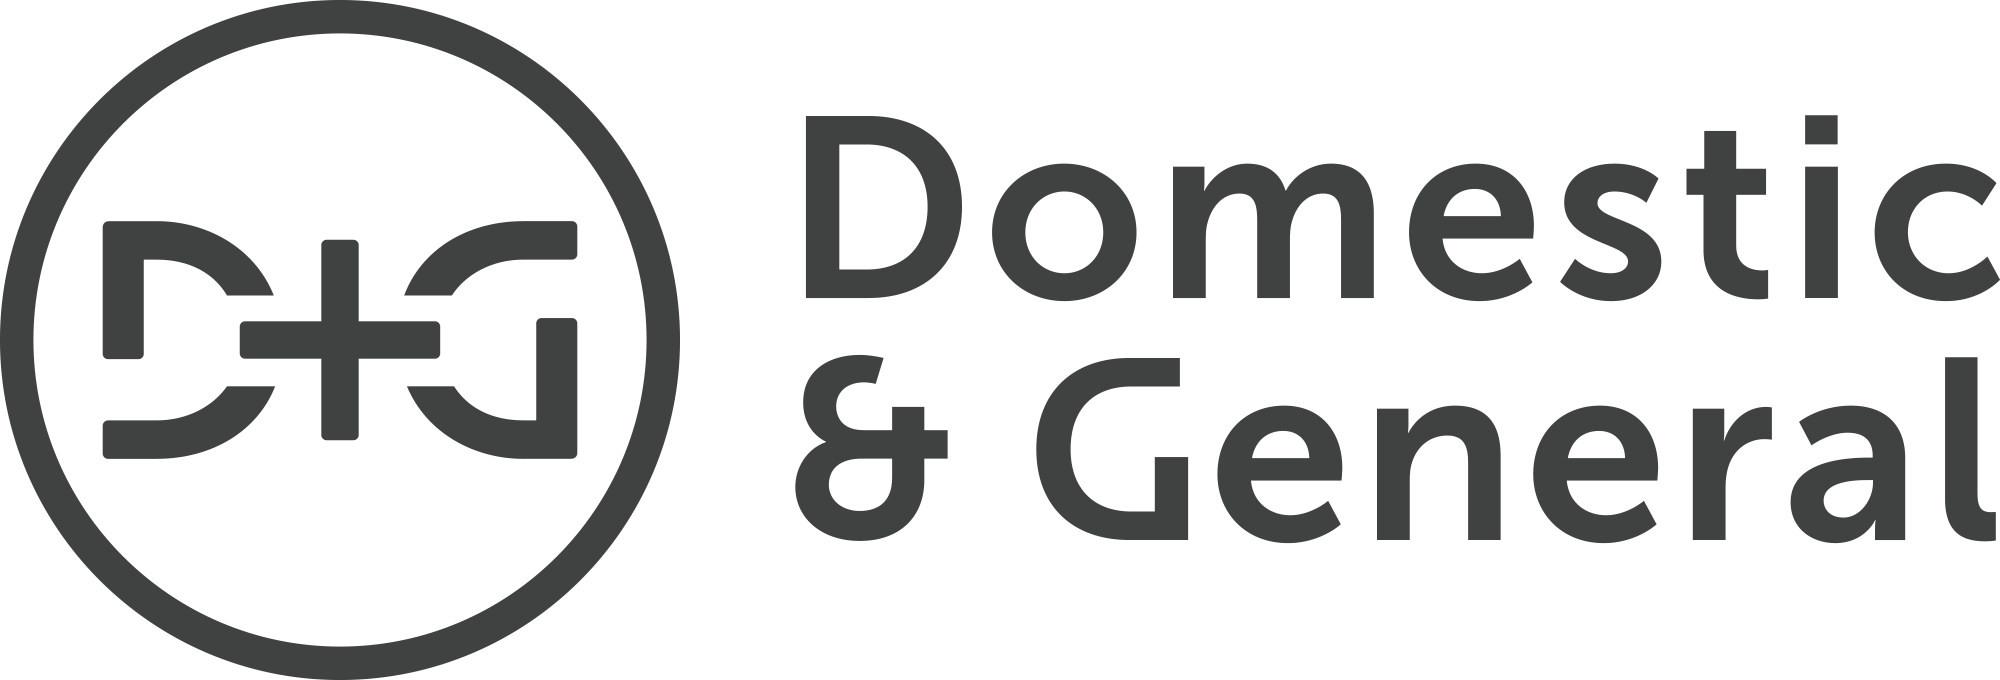 dg-master-logo-mono-dark-grey-png-1.png